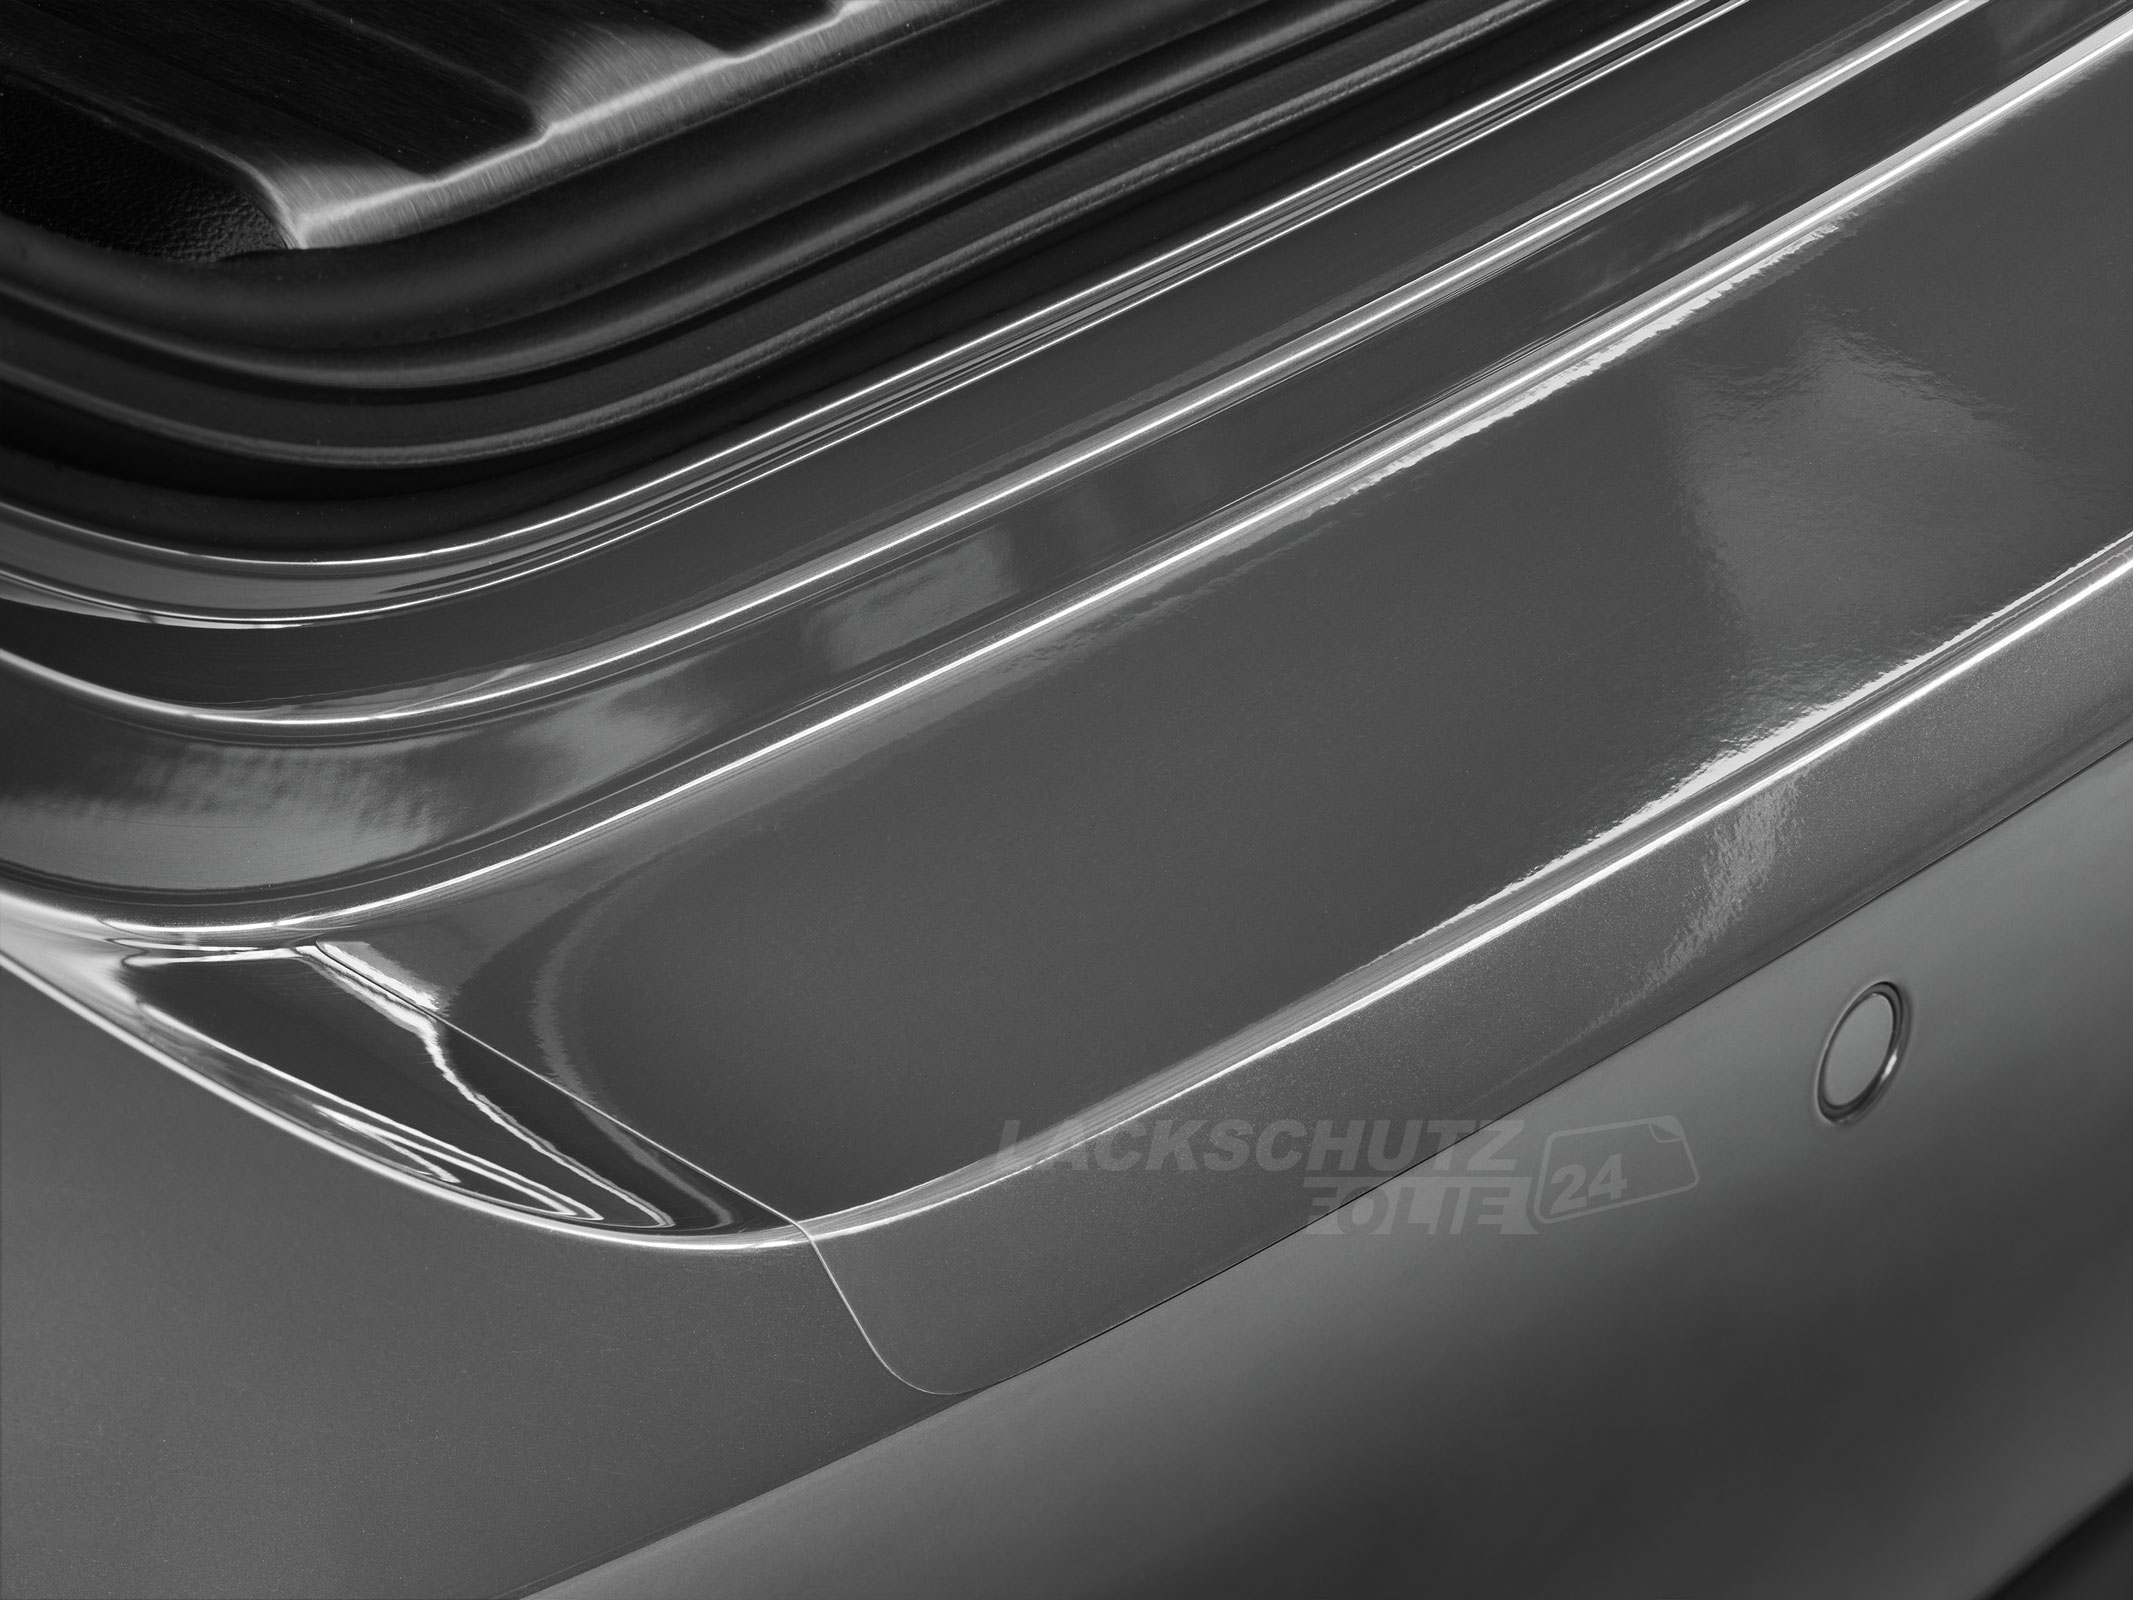 Ladekantenschutzfolie - Transparent Glatt Hochglänzend 240 µm stark für VW / Volkswagen Polo (V) Typ 6C, BJ 2014-09/2017